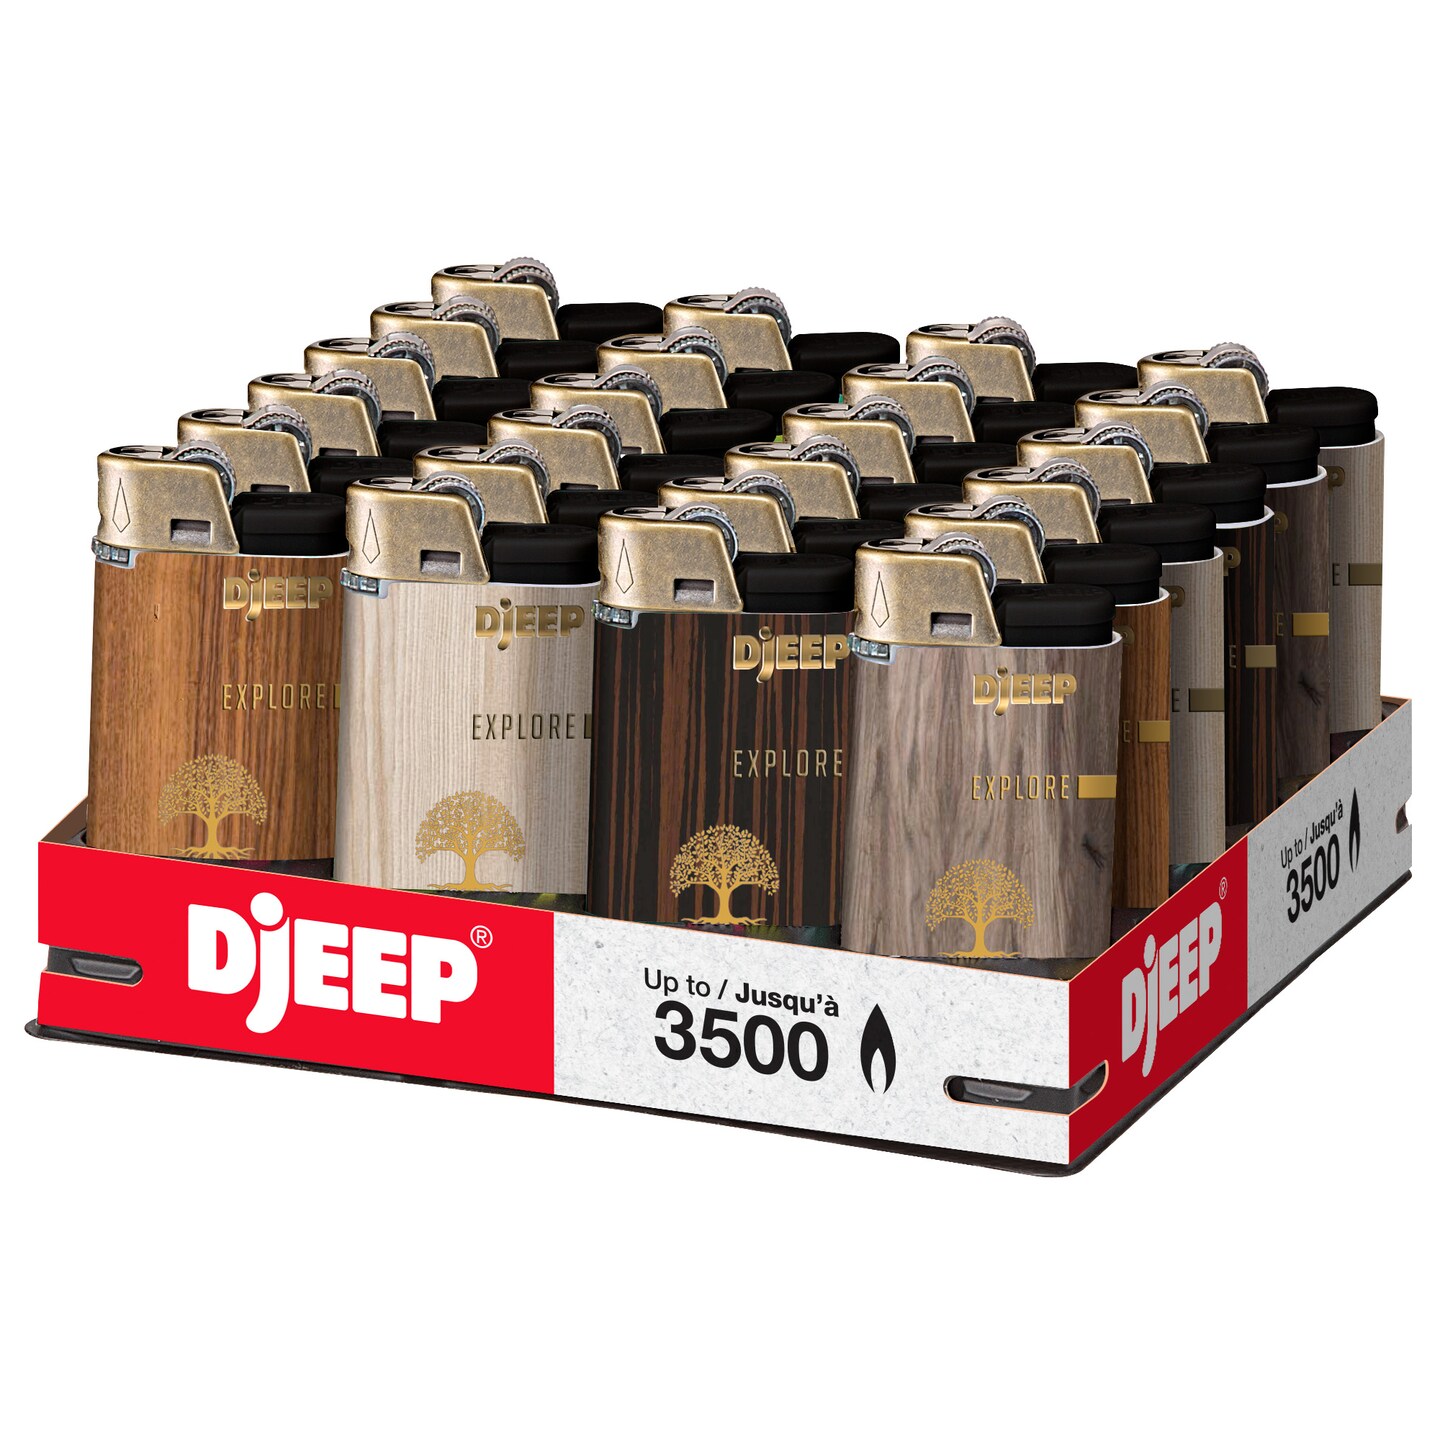 Benign Er deprimeret Eller DJEEP Pocket Lighters, BOLD Collection Textured Metallic, Unique Lighters,  Disposable Lighters | Michaels